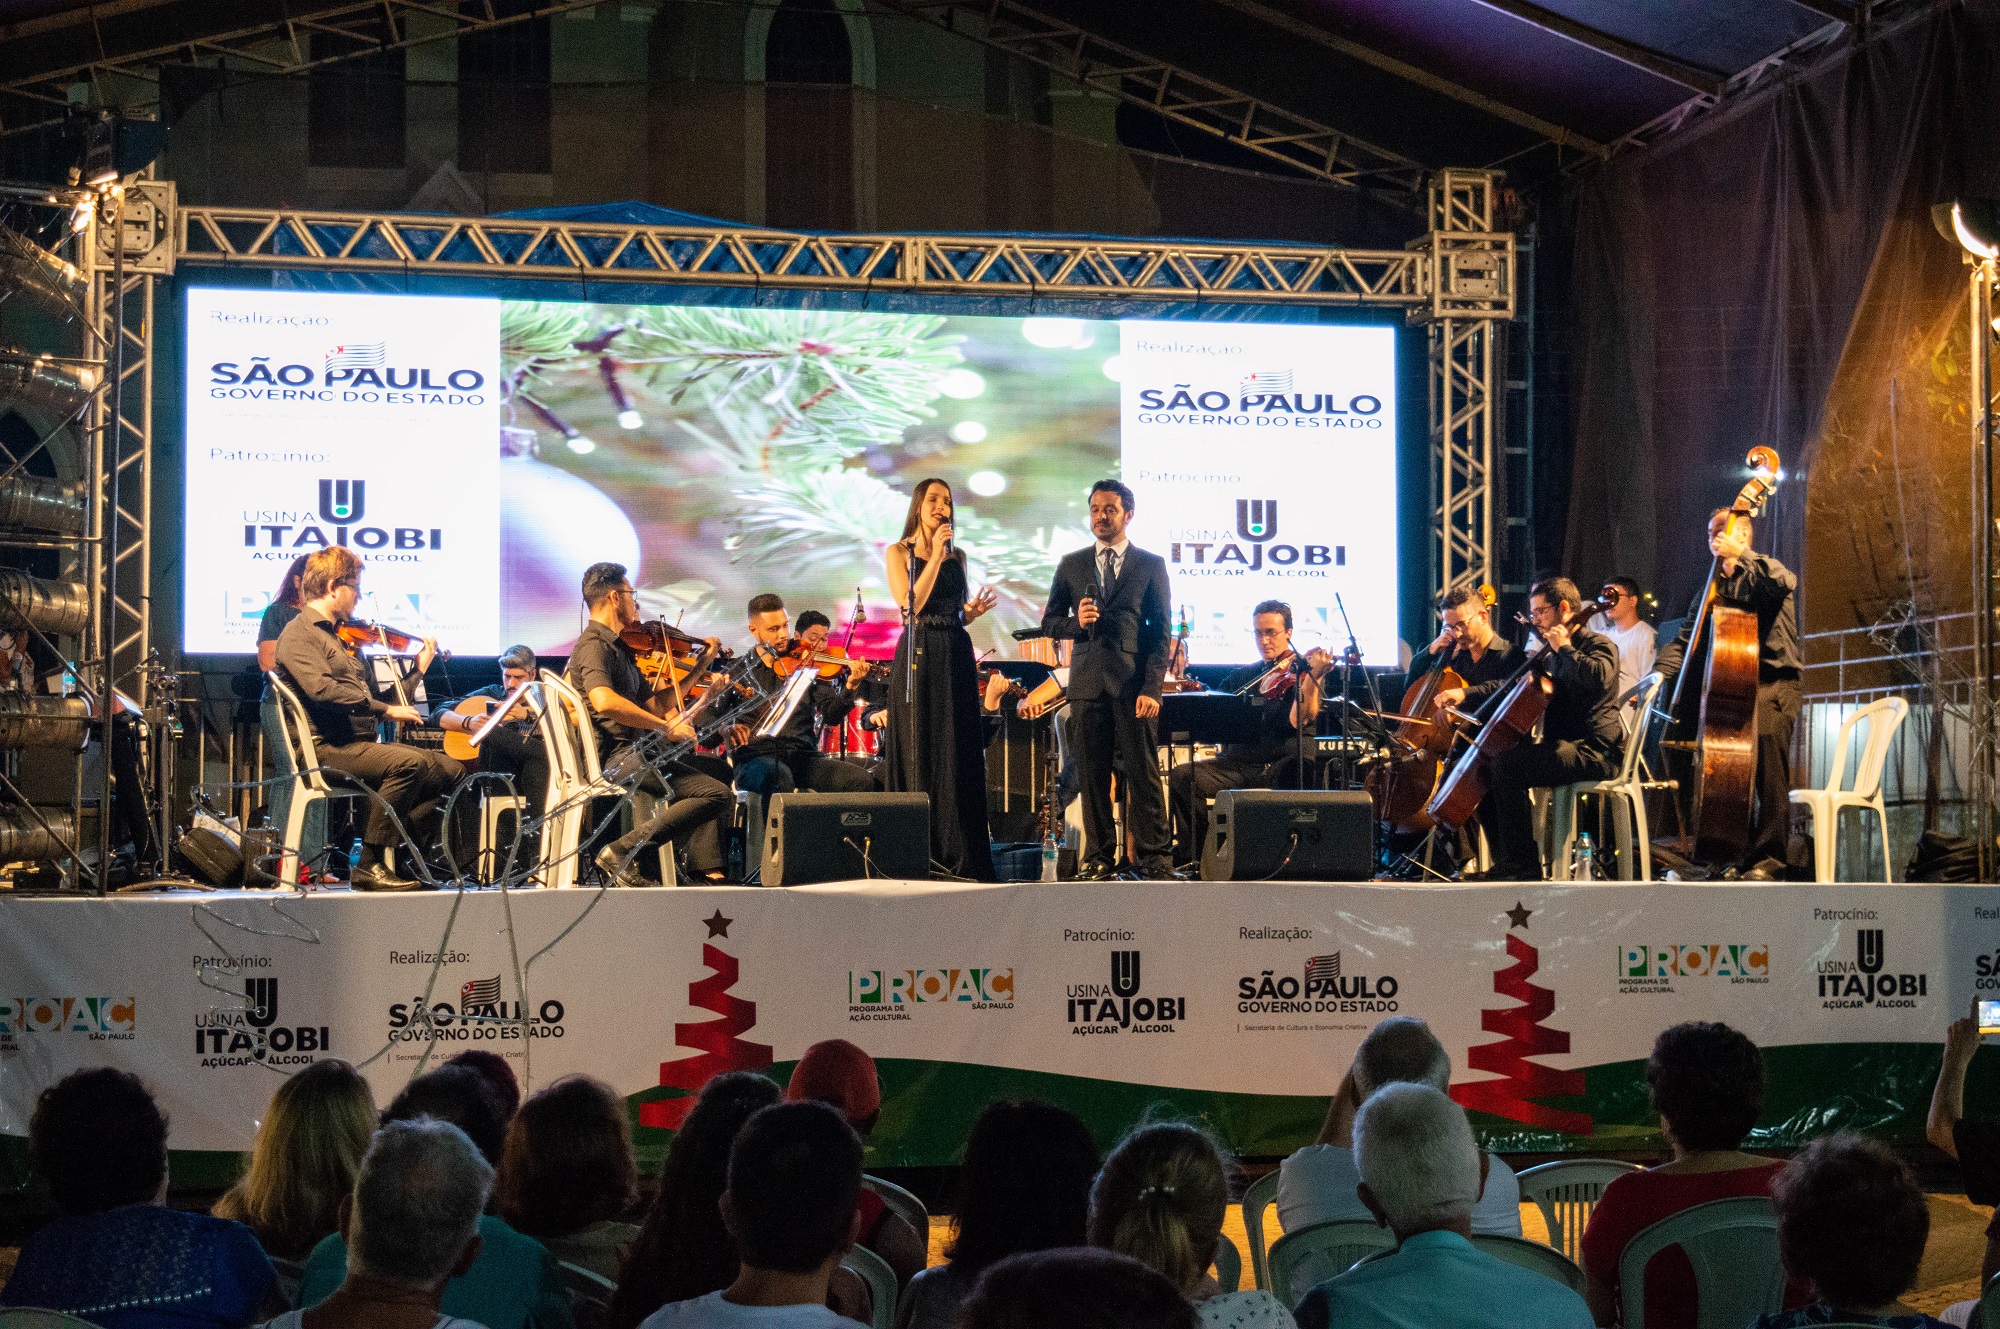 Apresentações musicais emocionaram jovens e adultos. Foto: Luís Fernando da Silva / Prefeitura Municipal de Urupês.